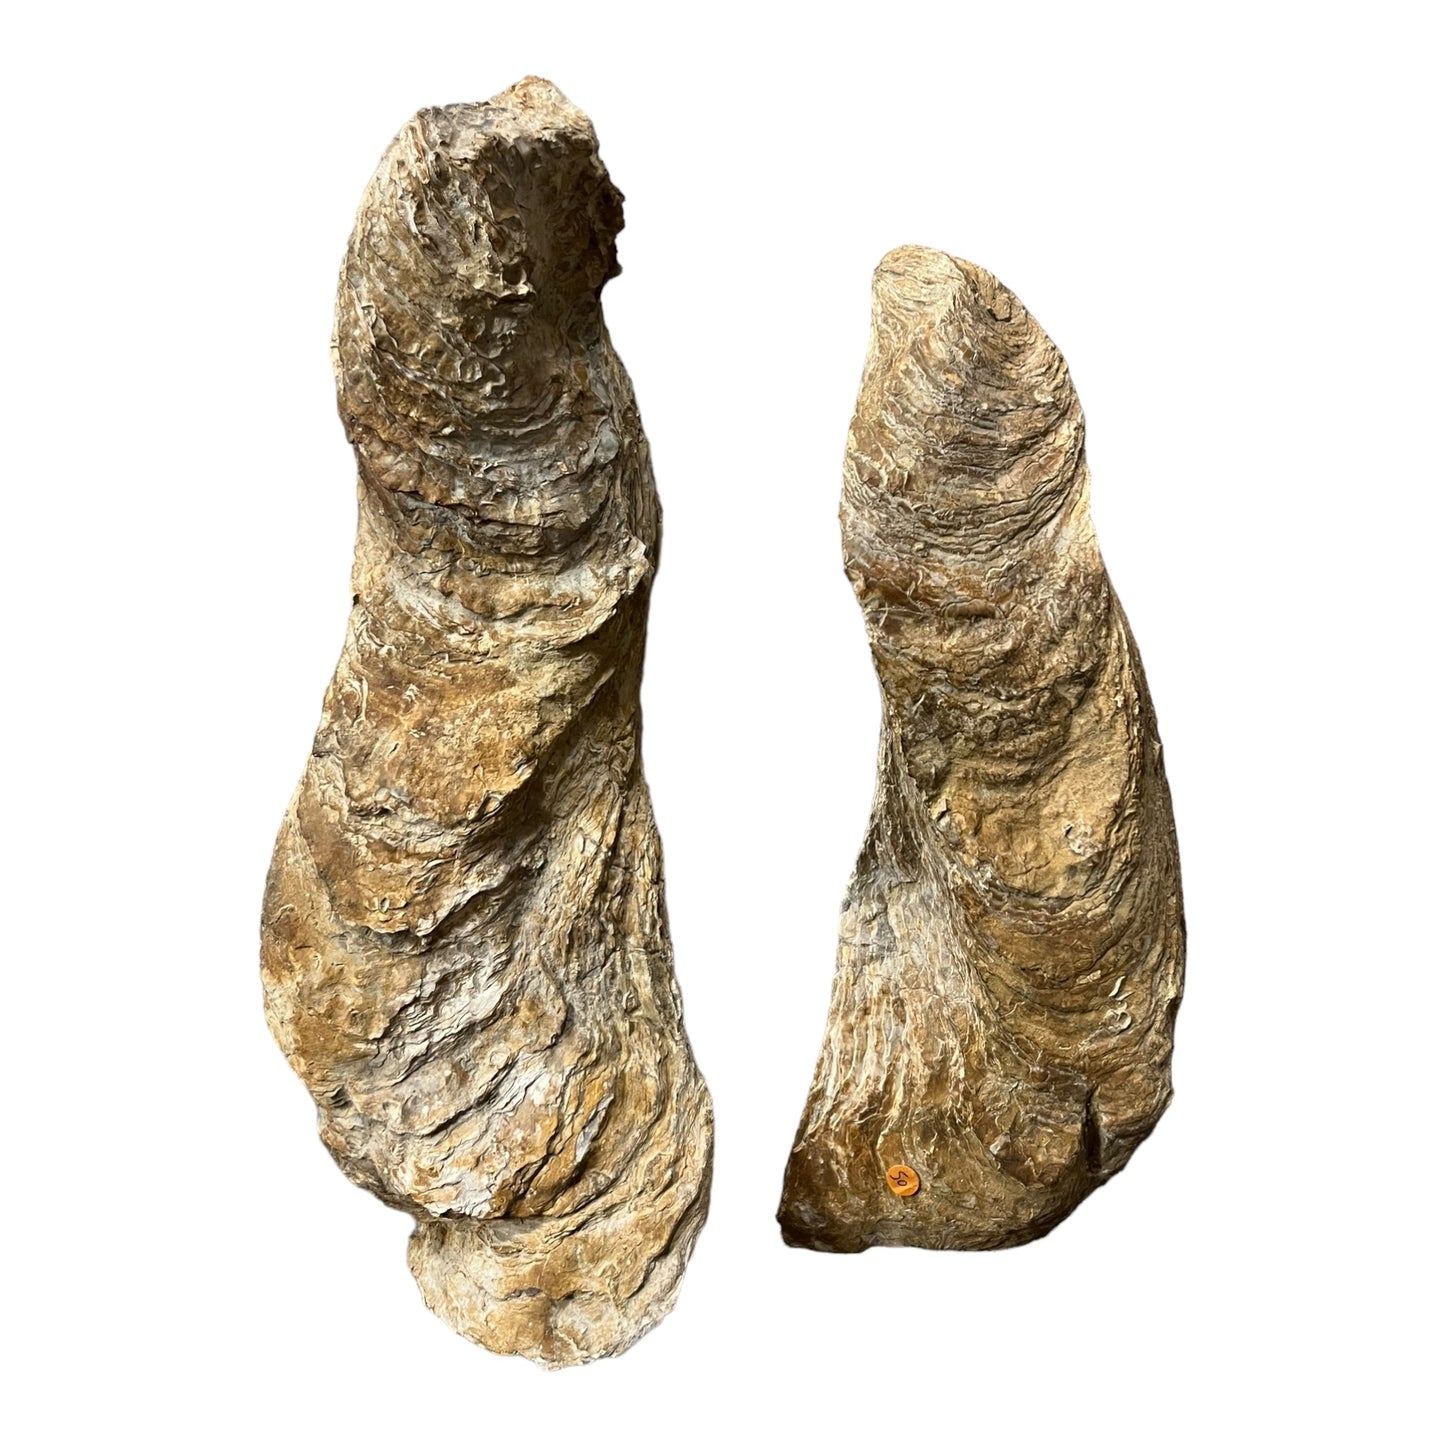 Ostrea crassissima large Fossil oyster Hérault France DR193